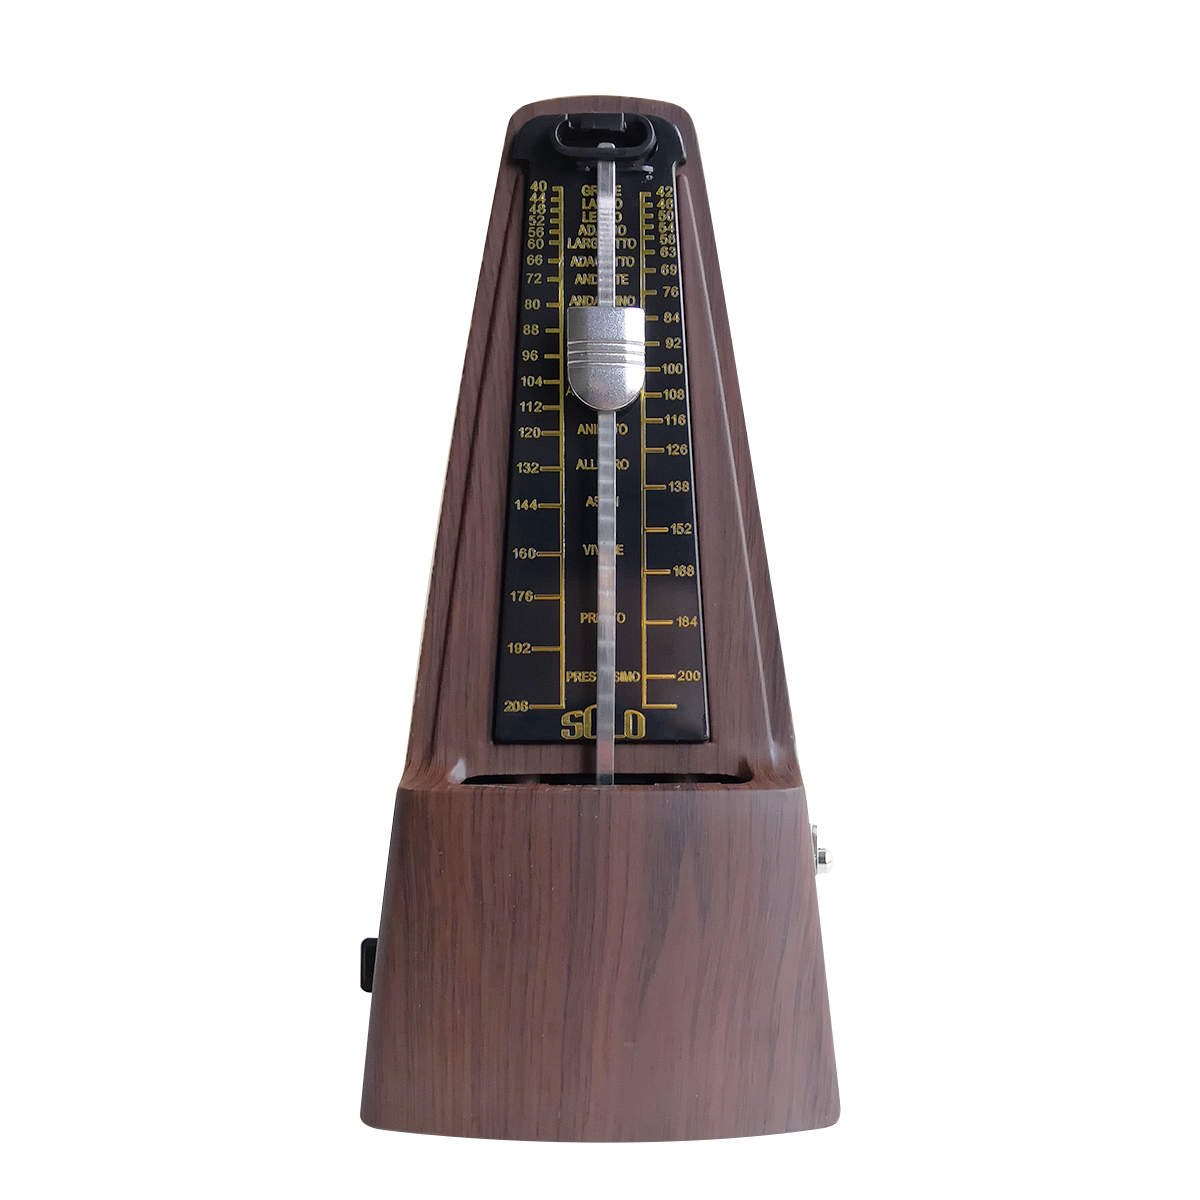 

SOLO Flat Head Redwood Machinery Метроном для фортепианной гитары Барабан Скрипка Guzheng Музыкальный инструмент